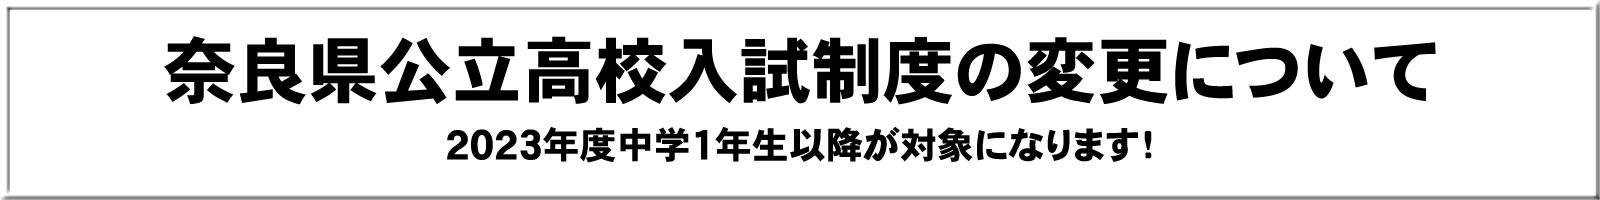 奈良県公立高校入試制度変更